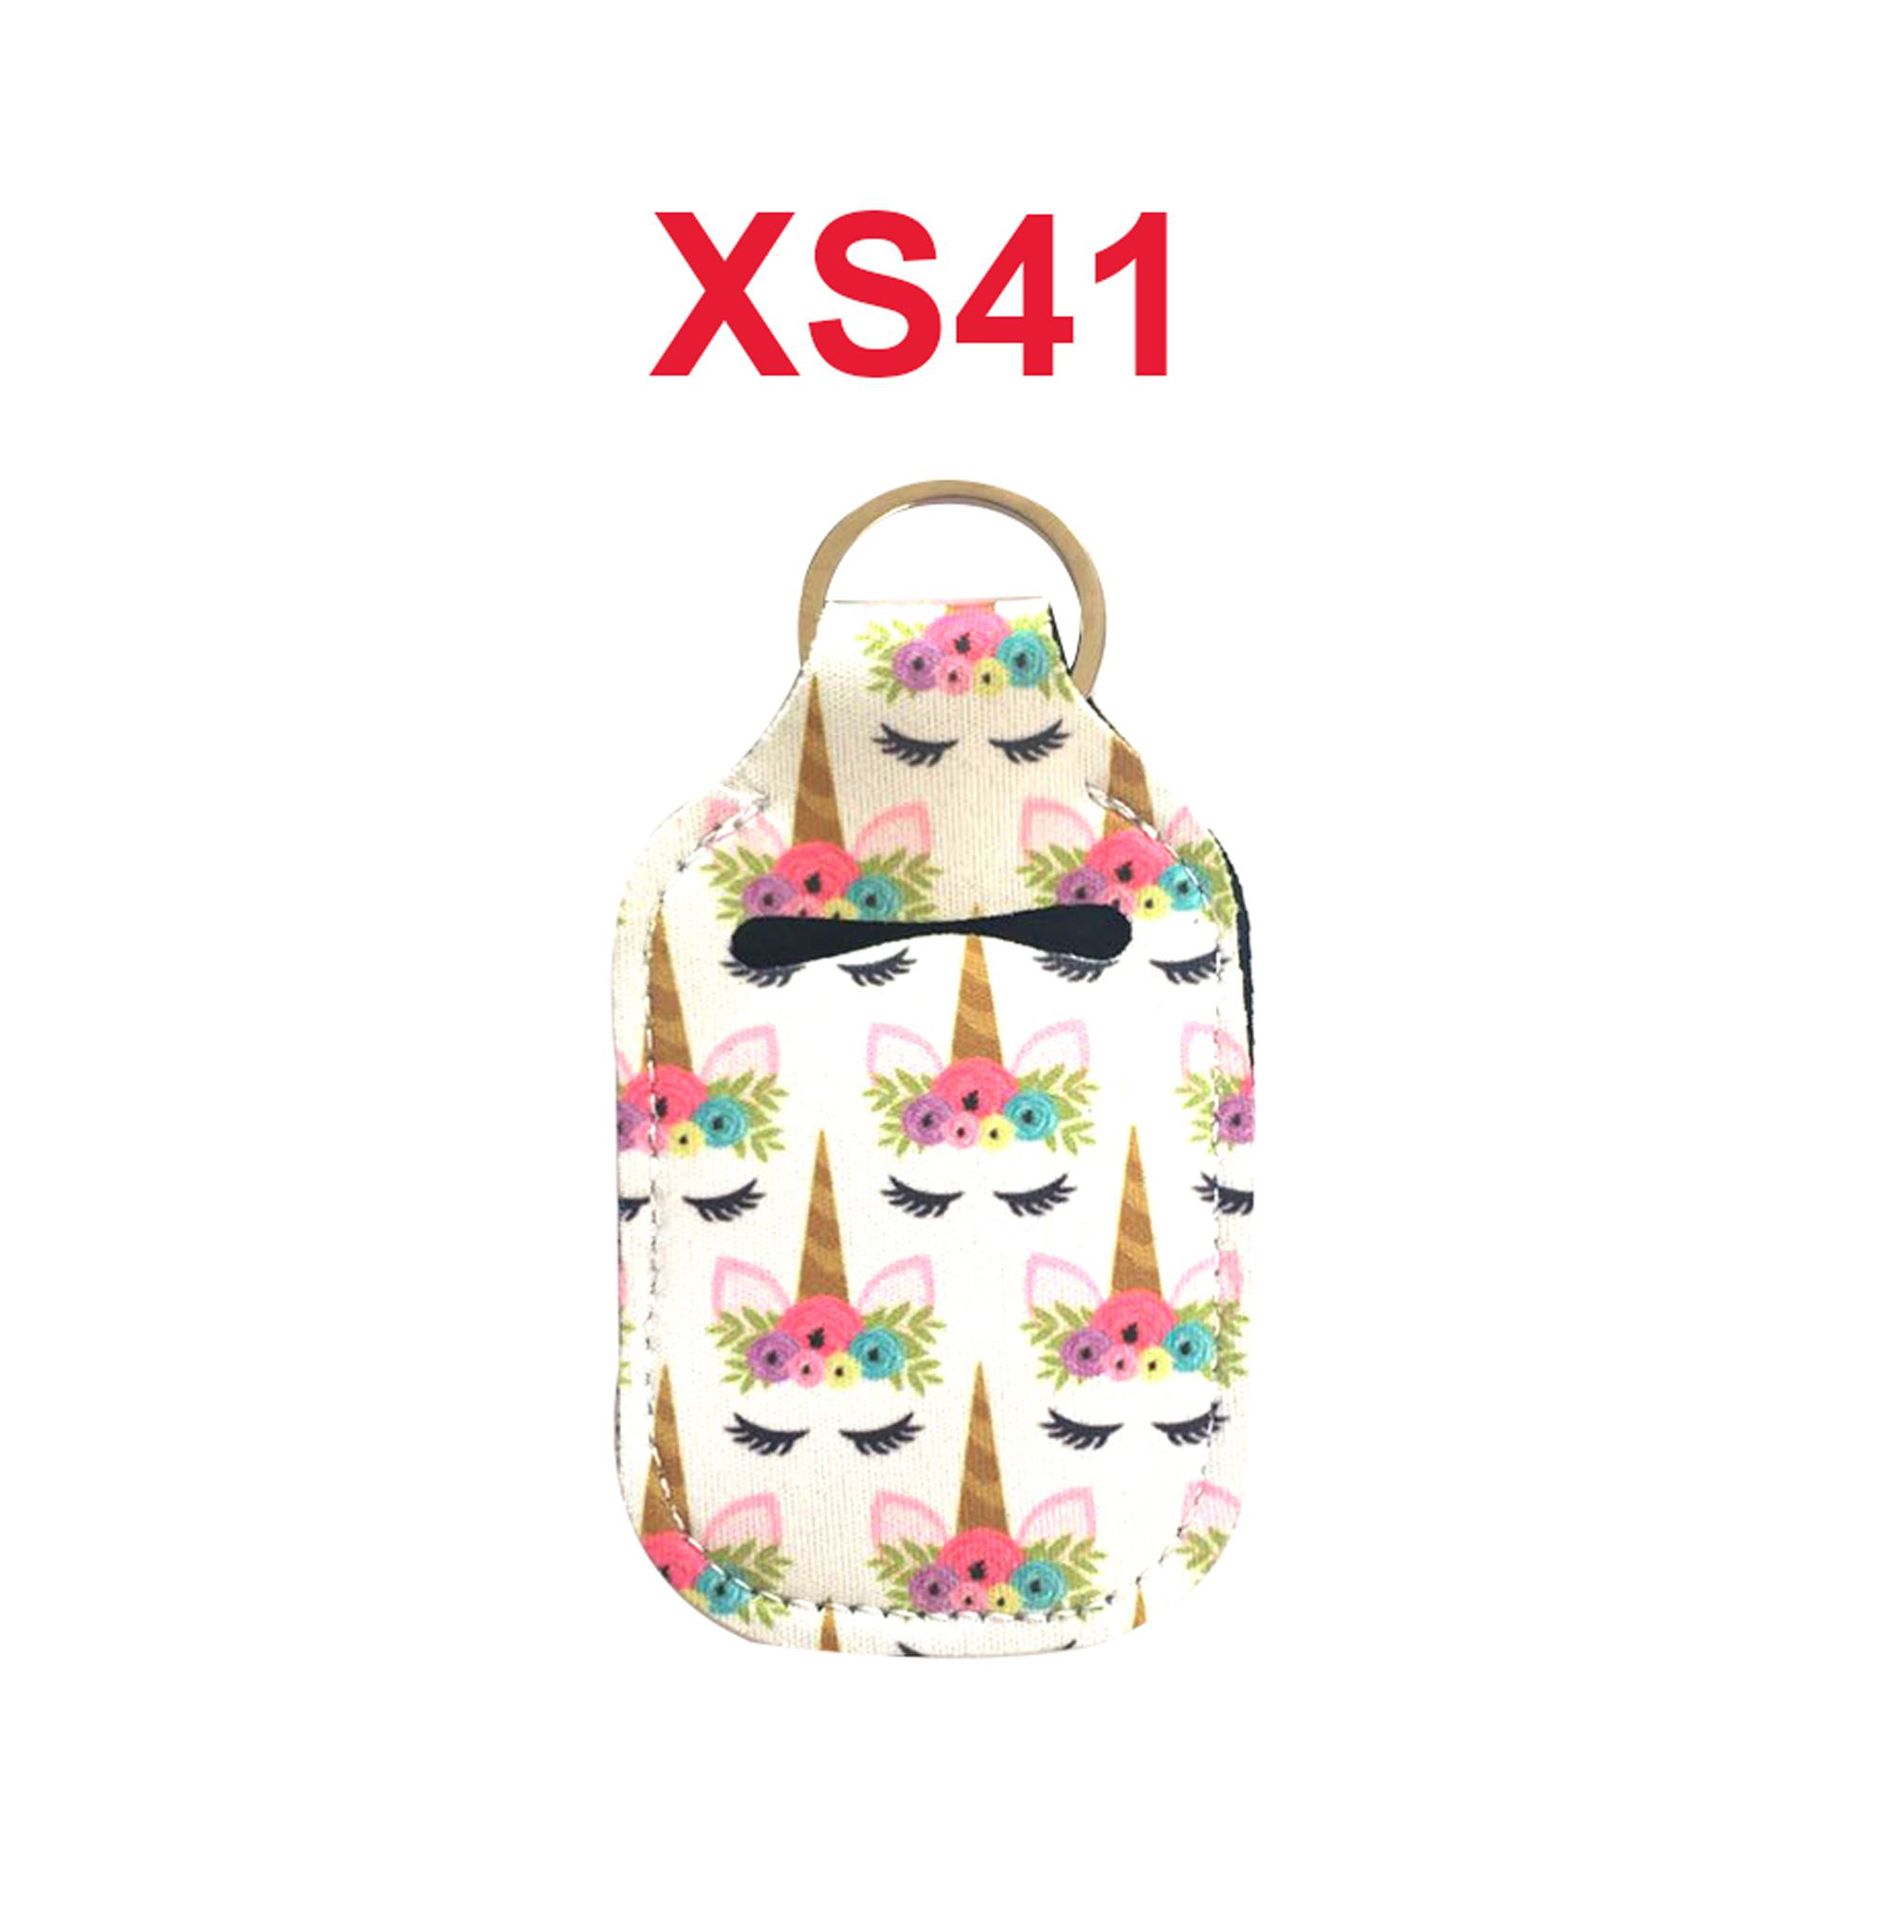 XS41